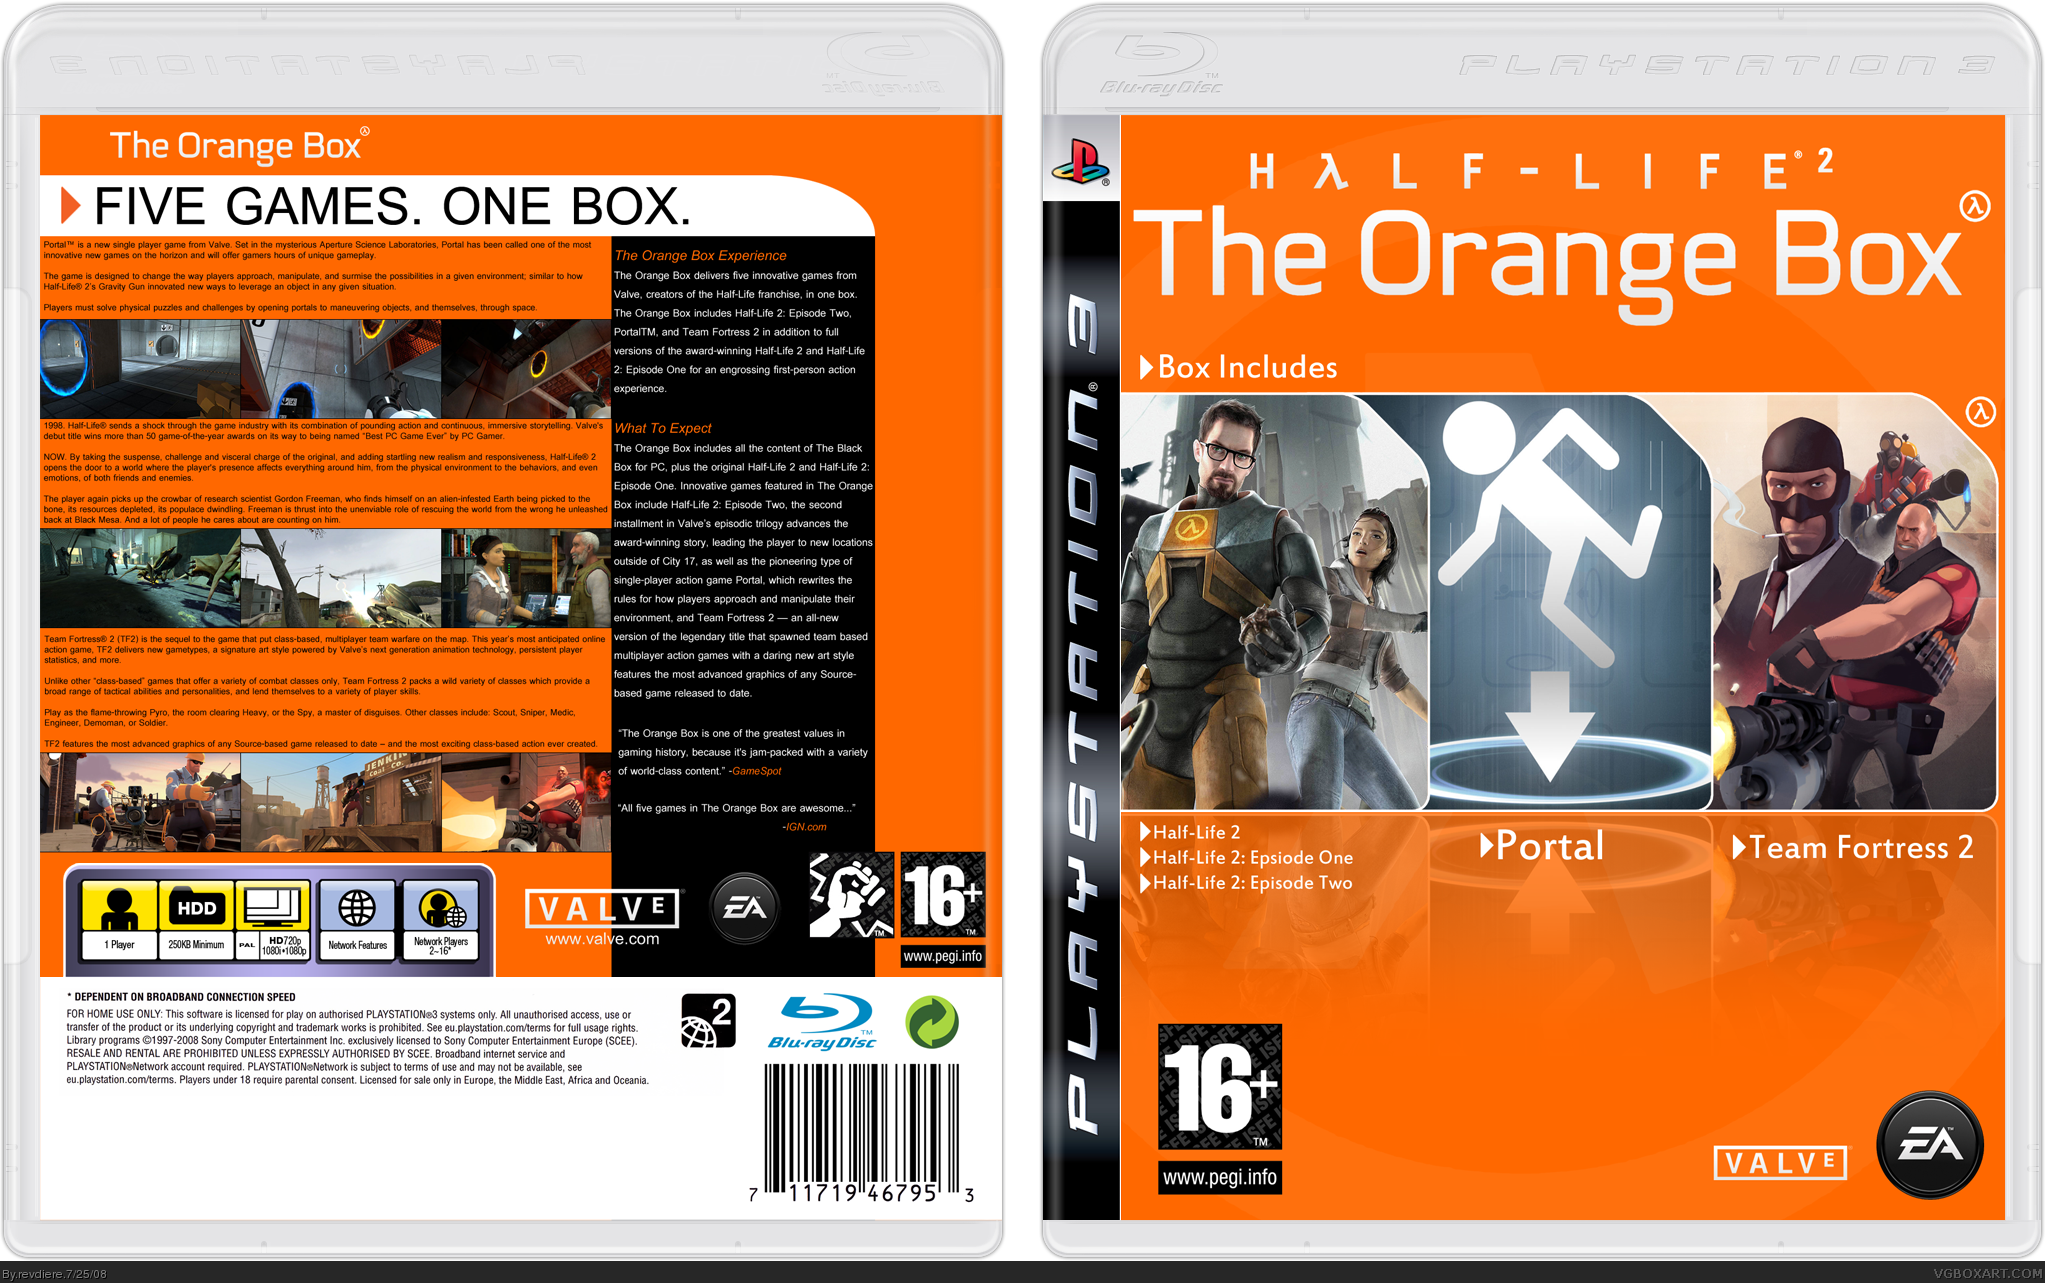 The Orange Box box cover